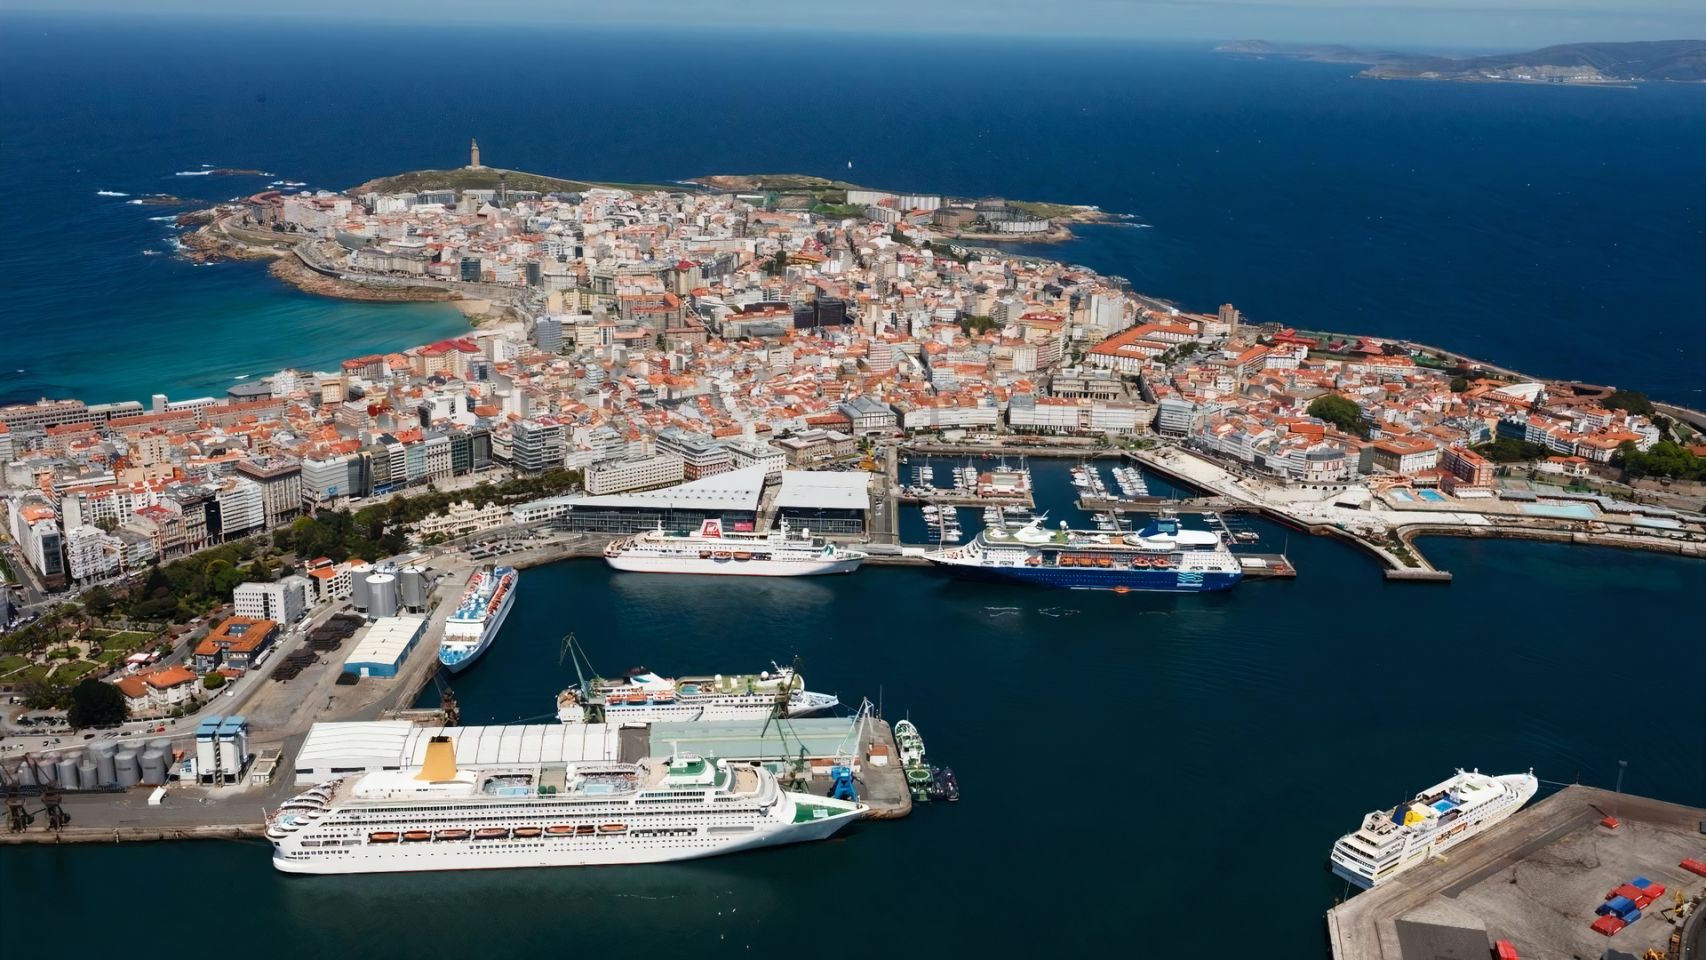 Vista aérea de varios cruceros en el puerto de A Coruña en una foto de archivo, con récord de 6 cruceros simultáneamente.